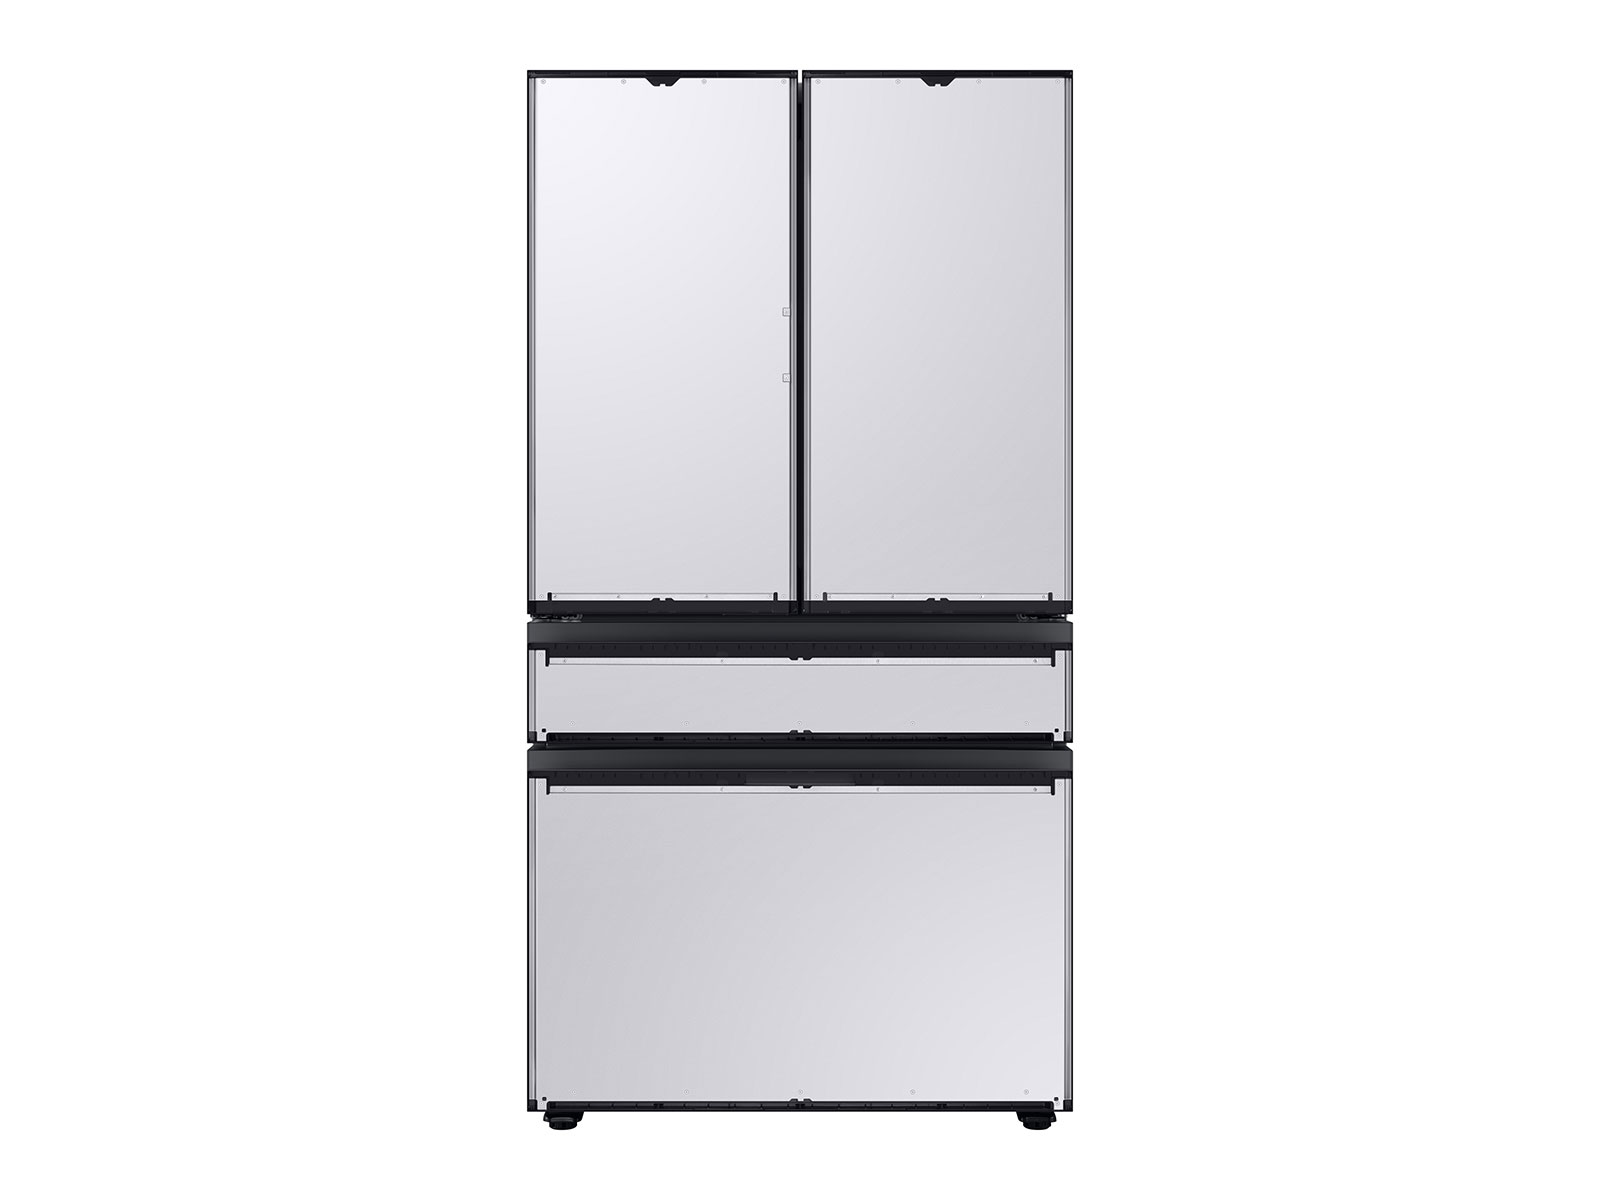 Bespoke 4-Door French Door Refrigerator (29 cu. ft.) with Customizable Door Panel Colors and Beverage Center&trade;